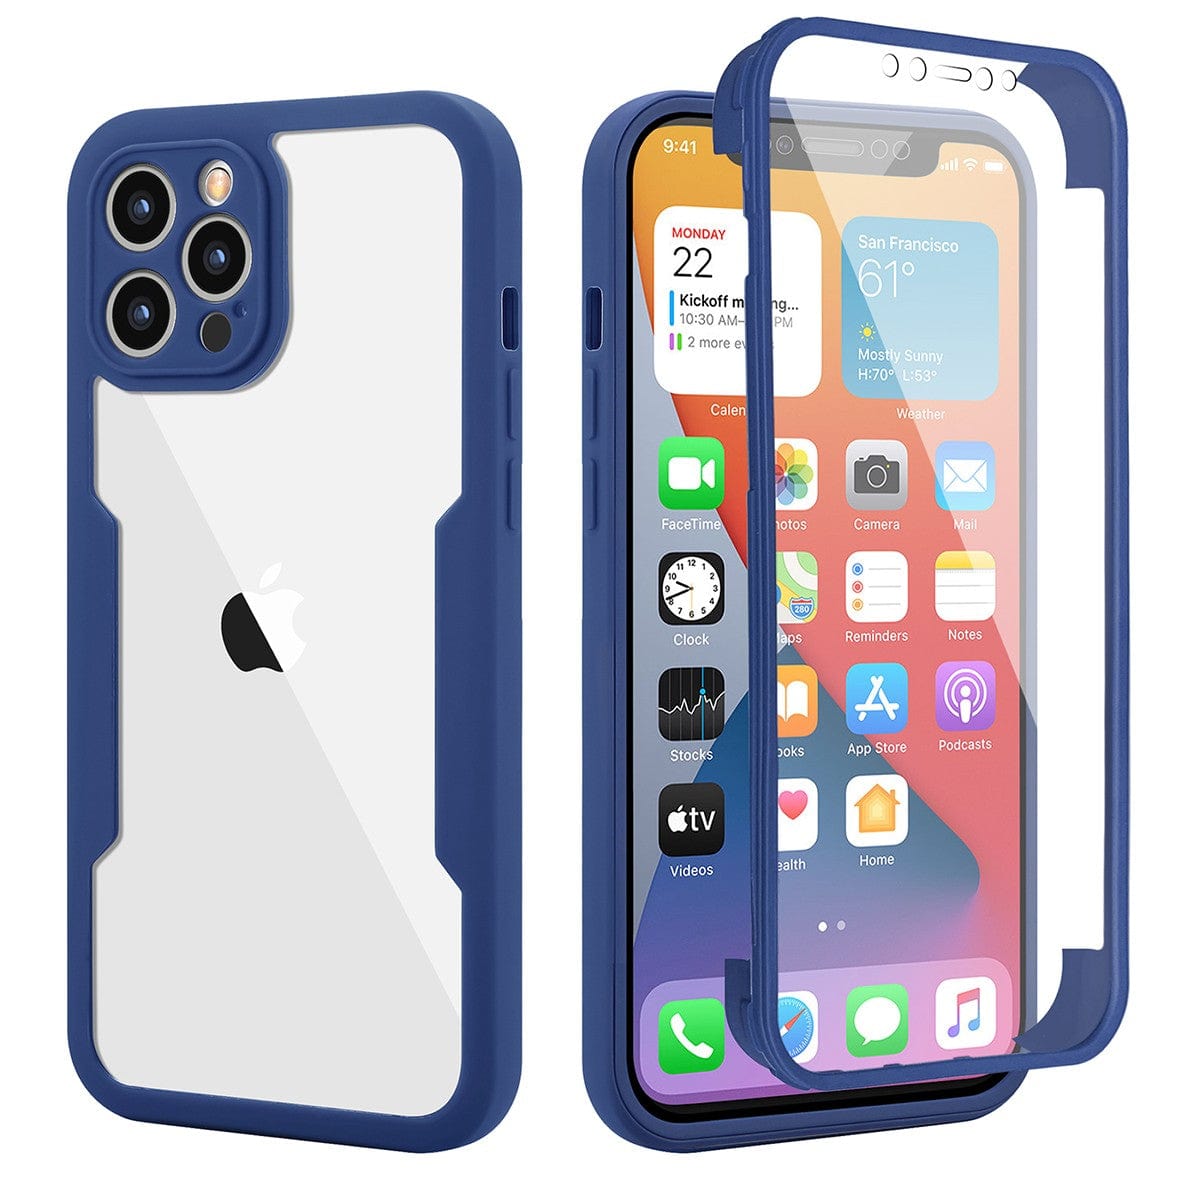 Husa Max Defence pentru iPhone 12 Pro Max, Bumper Albastru, Fata Dubla Transparenta, Protectie Antisoc Full 360 ( fata, spate, margini )